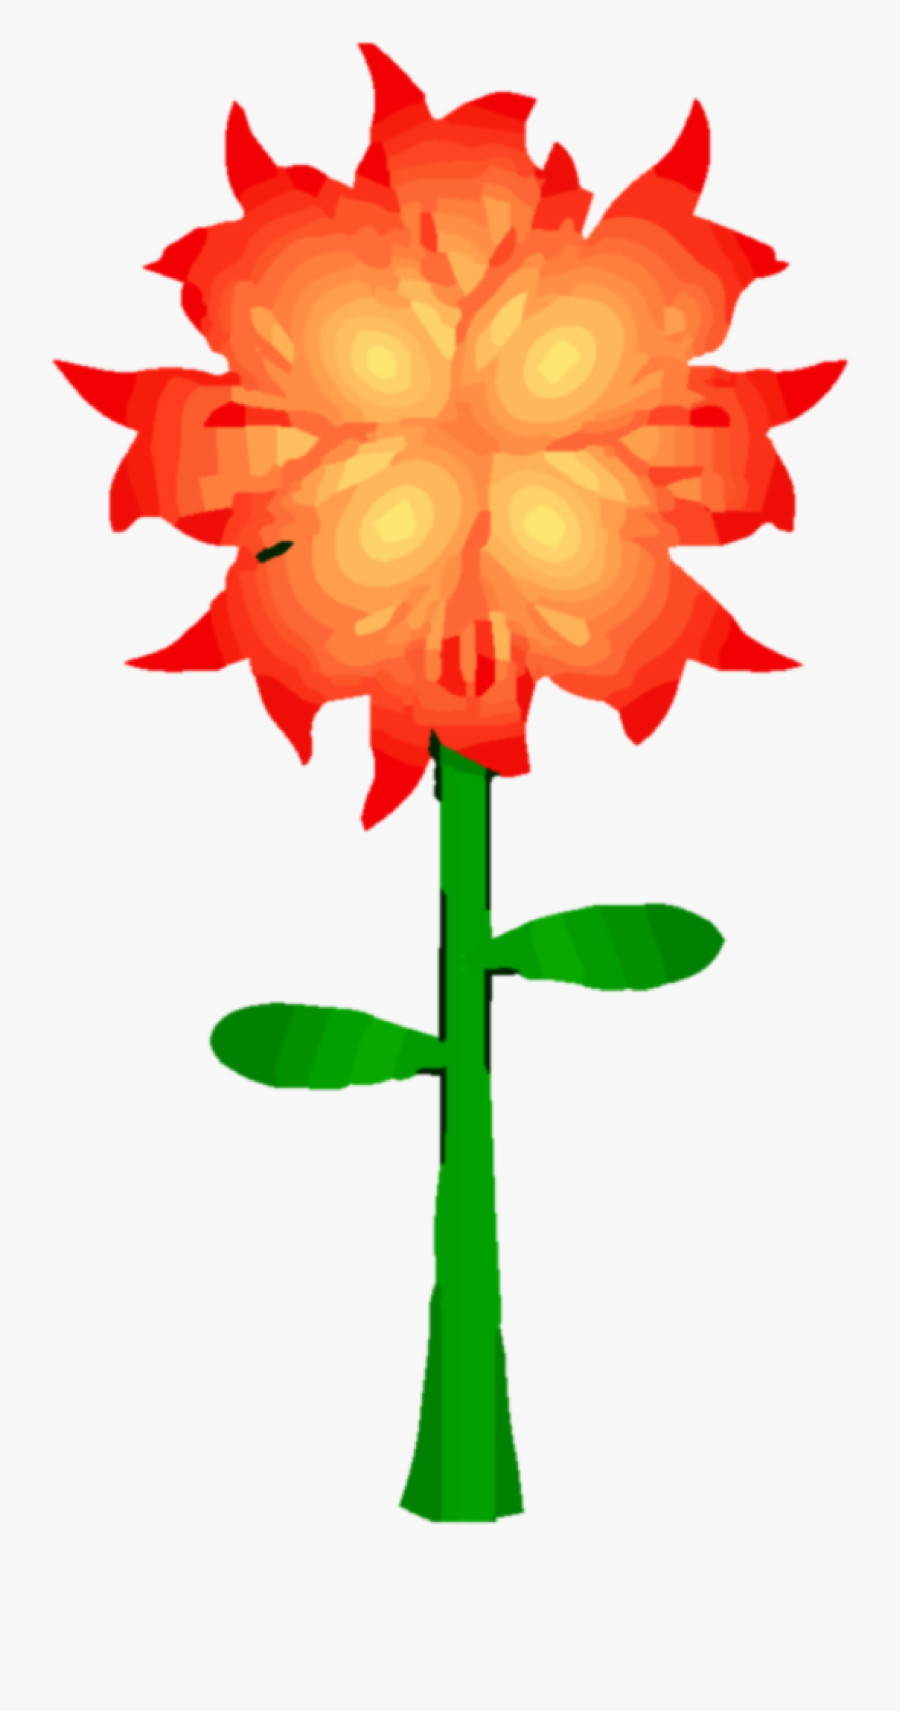 Fire Flower Png Clipart - Fire Flower Clipart, Transparent Clipart